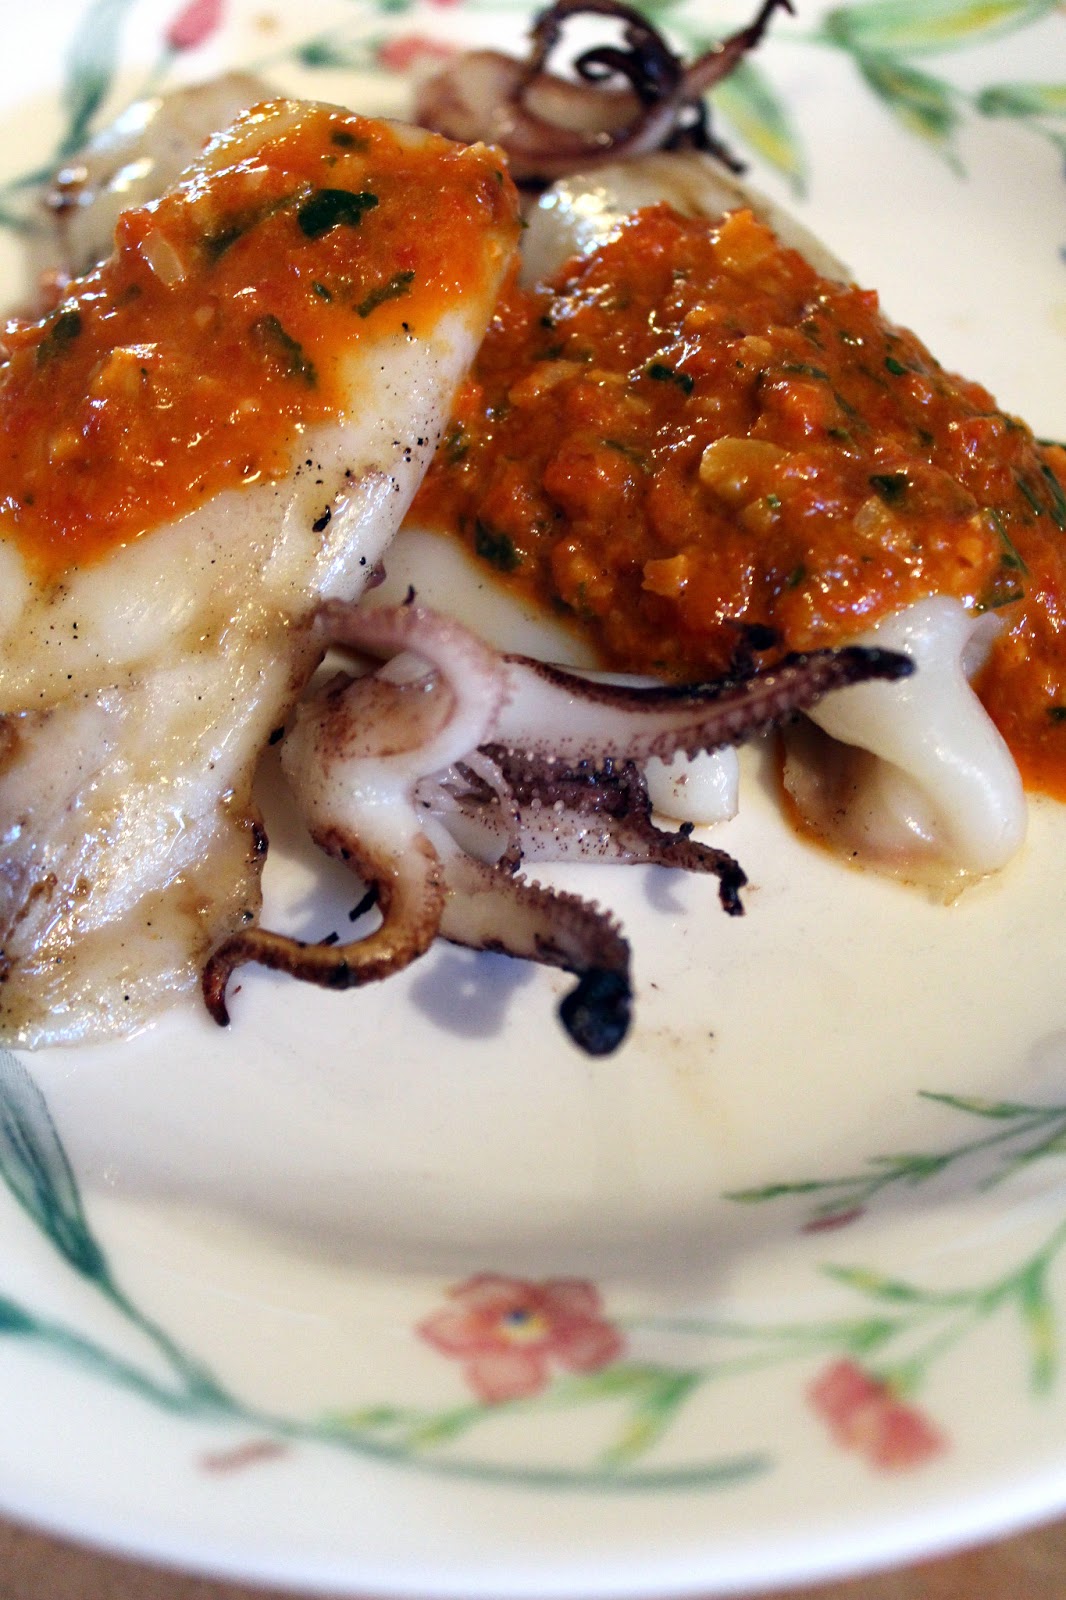 Chef Bolek: Grilled Calamari with a Red Pepper Sauce